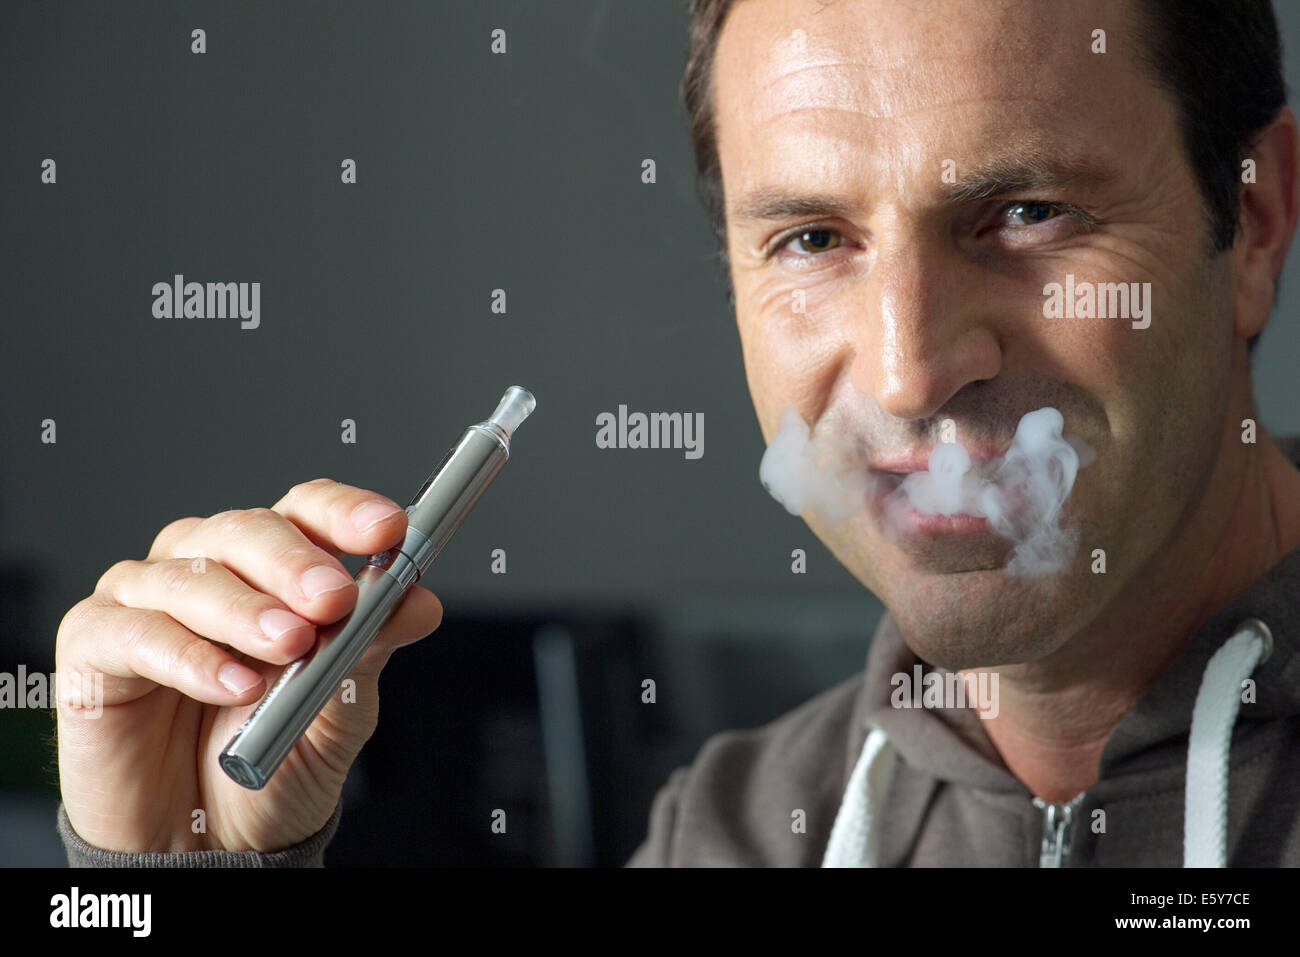 Uomo di fumare sigarette electonic, espirando il fumo Foto Stock